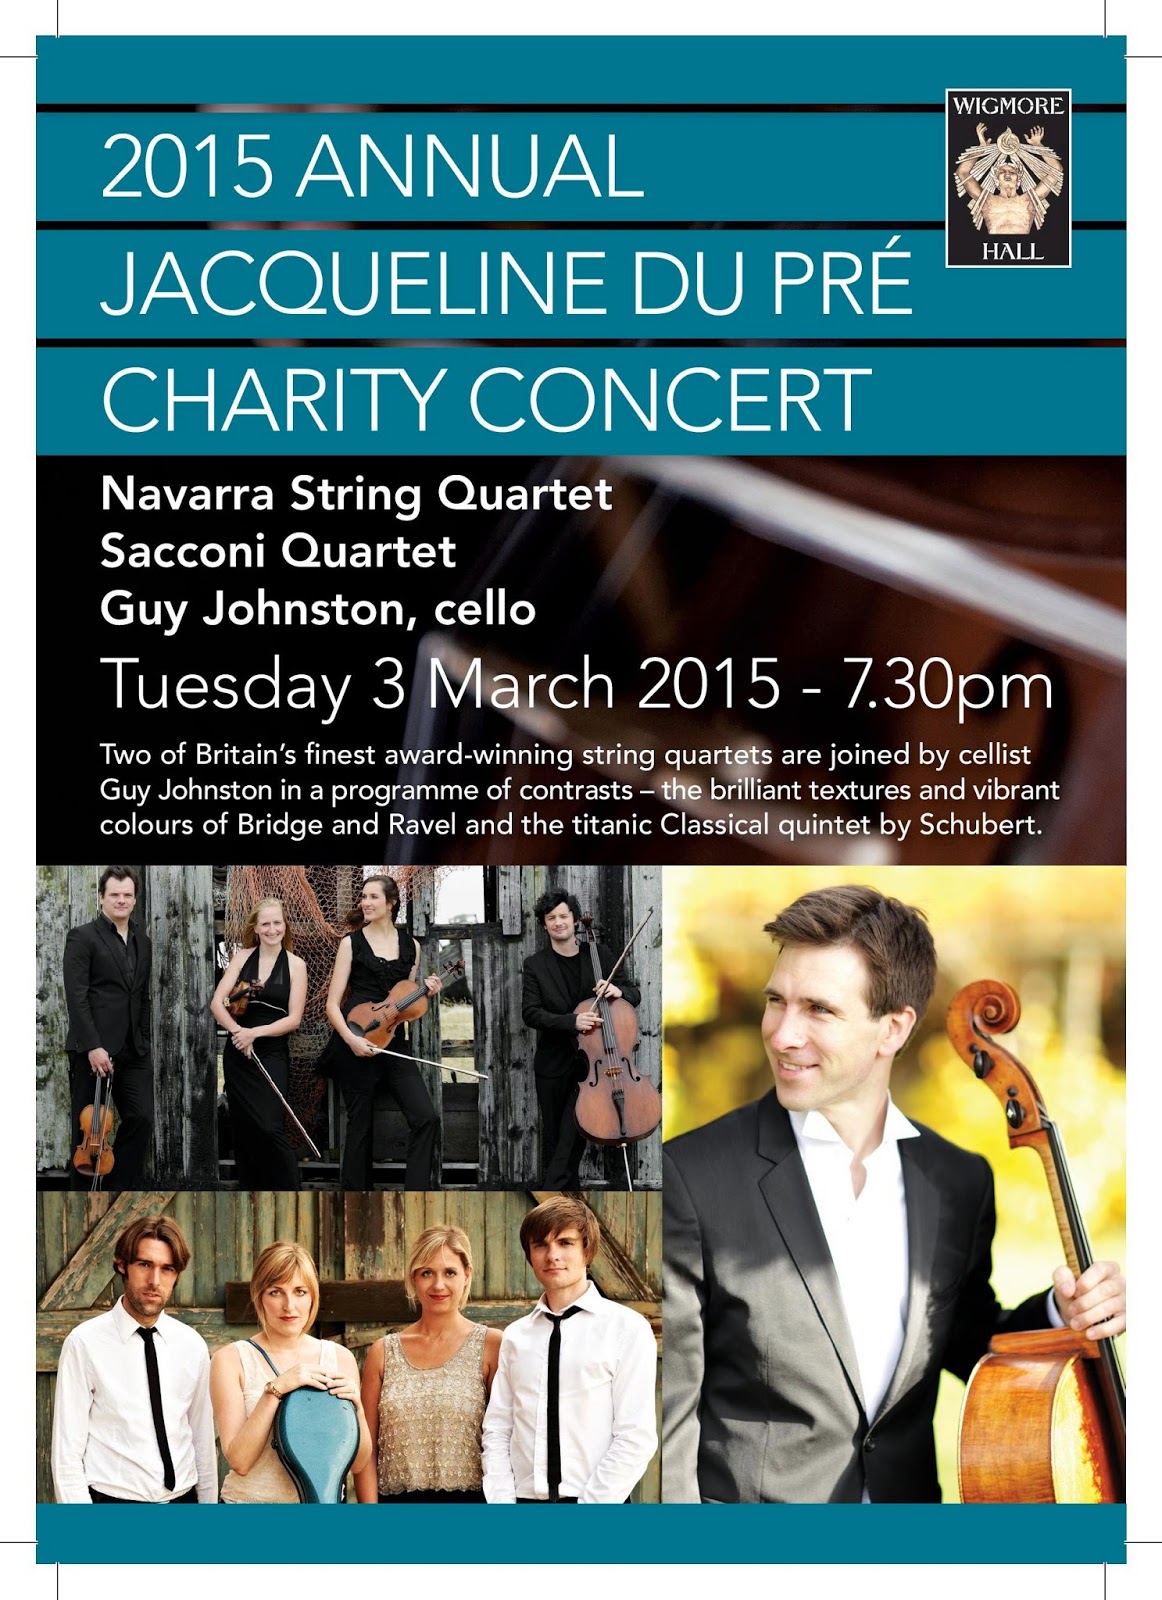 2015 Annual Jacqueline du Pre Charity Concert